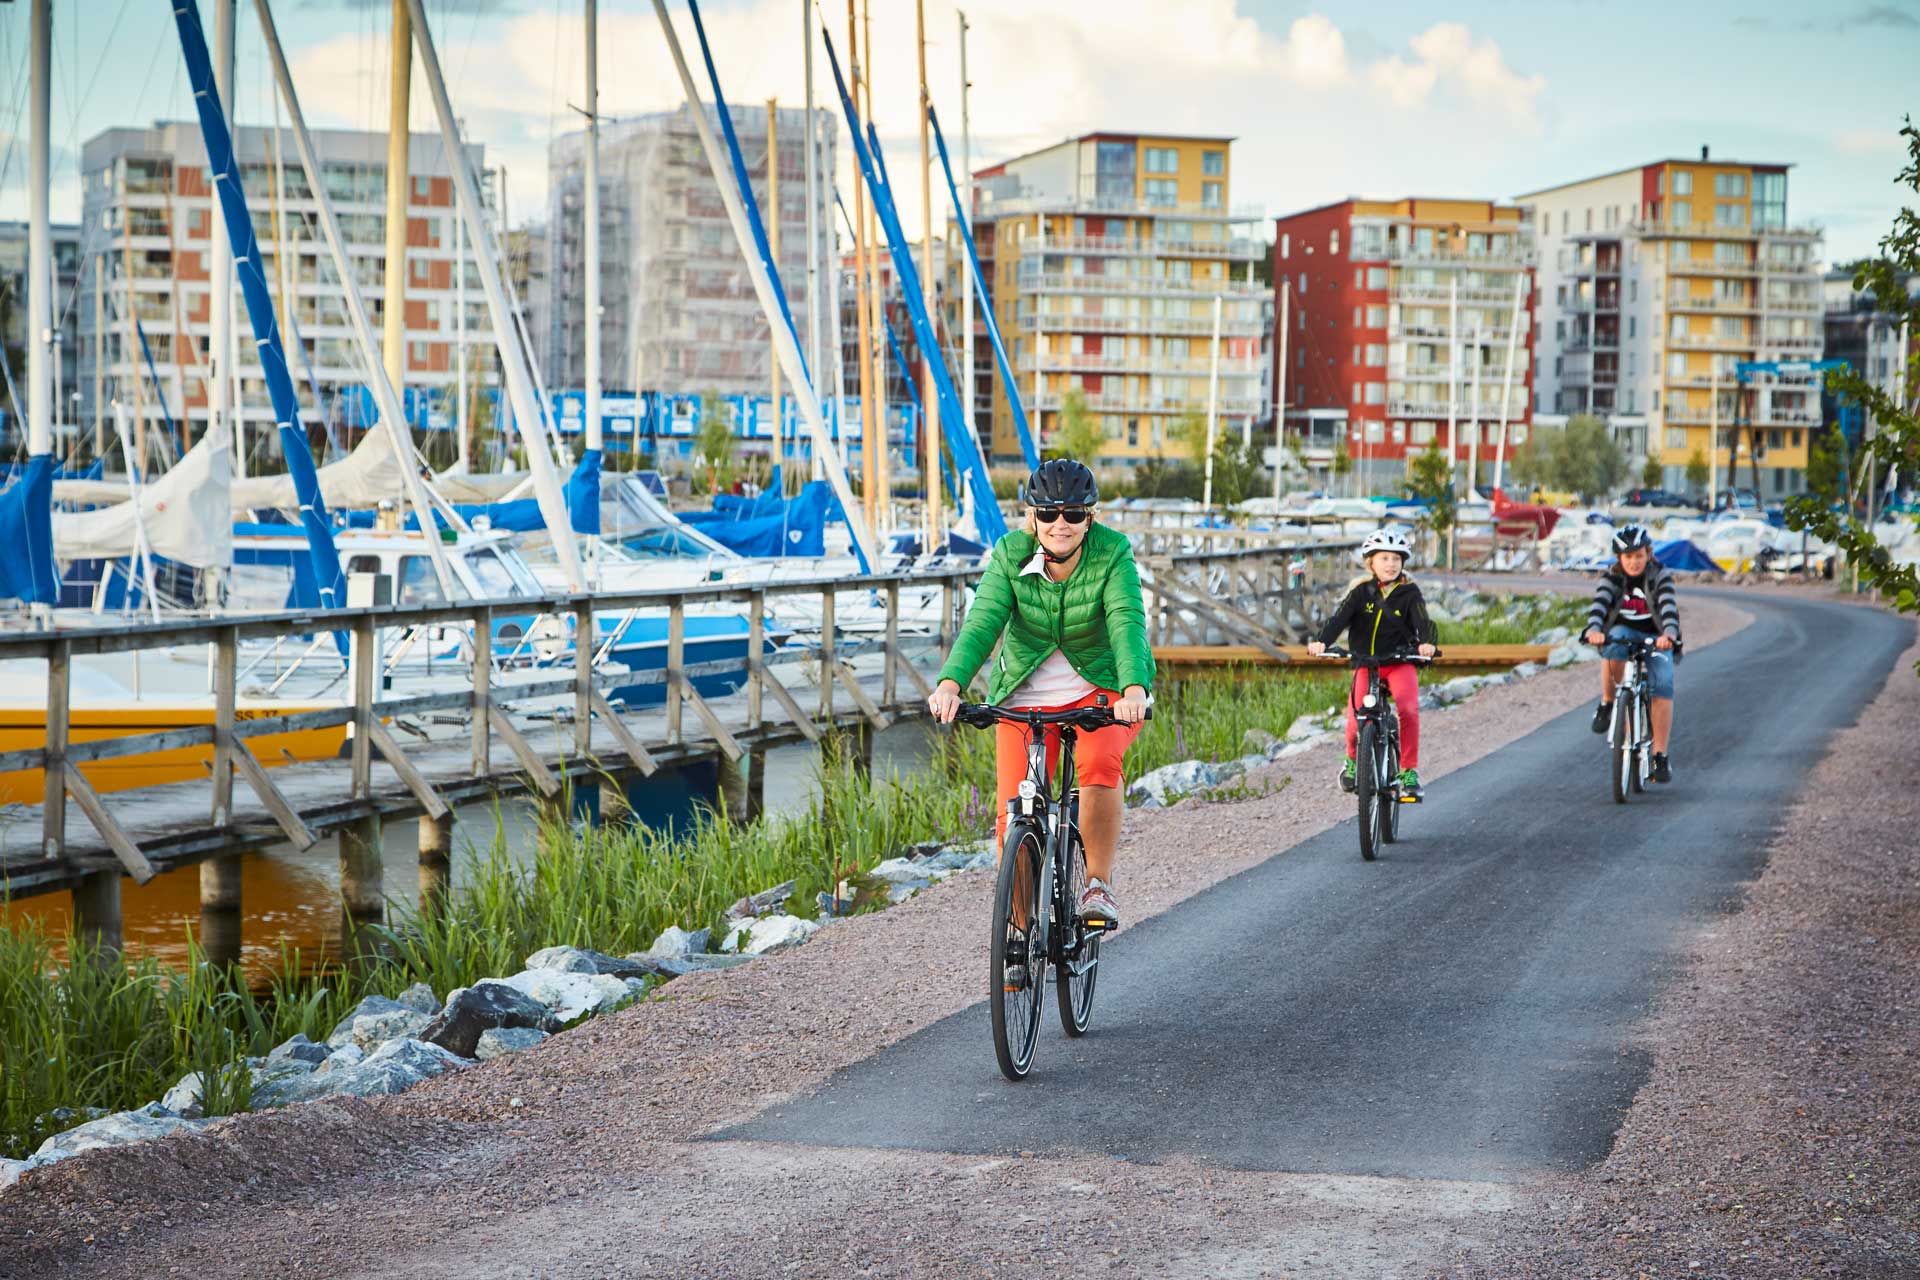 Cyklister cyklar på cykelväg förbi båtar på Öster Mälarstrand. Fotograf: BildN